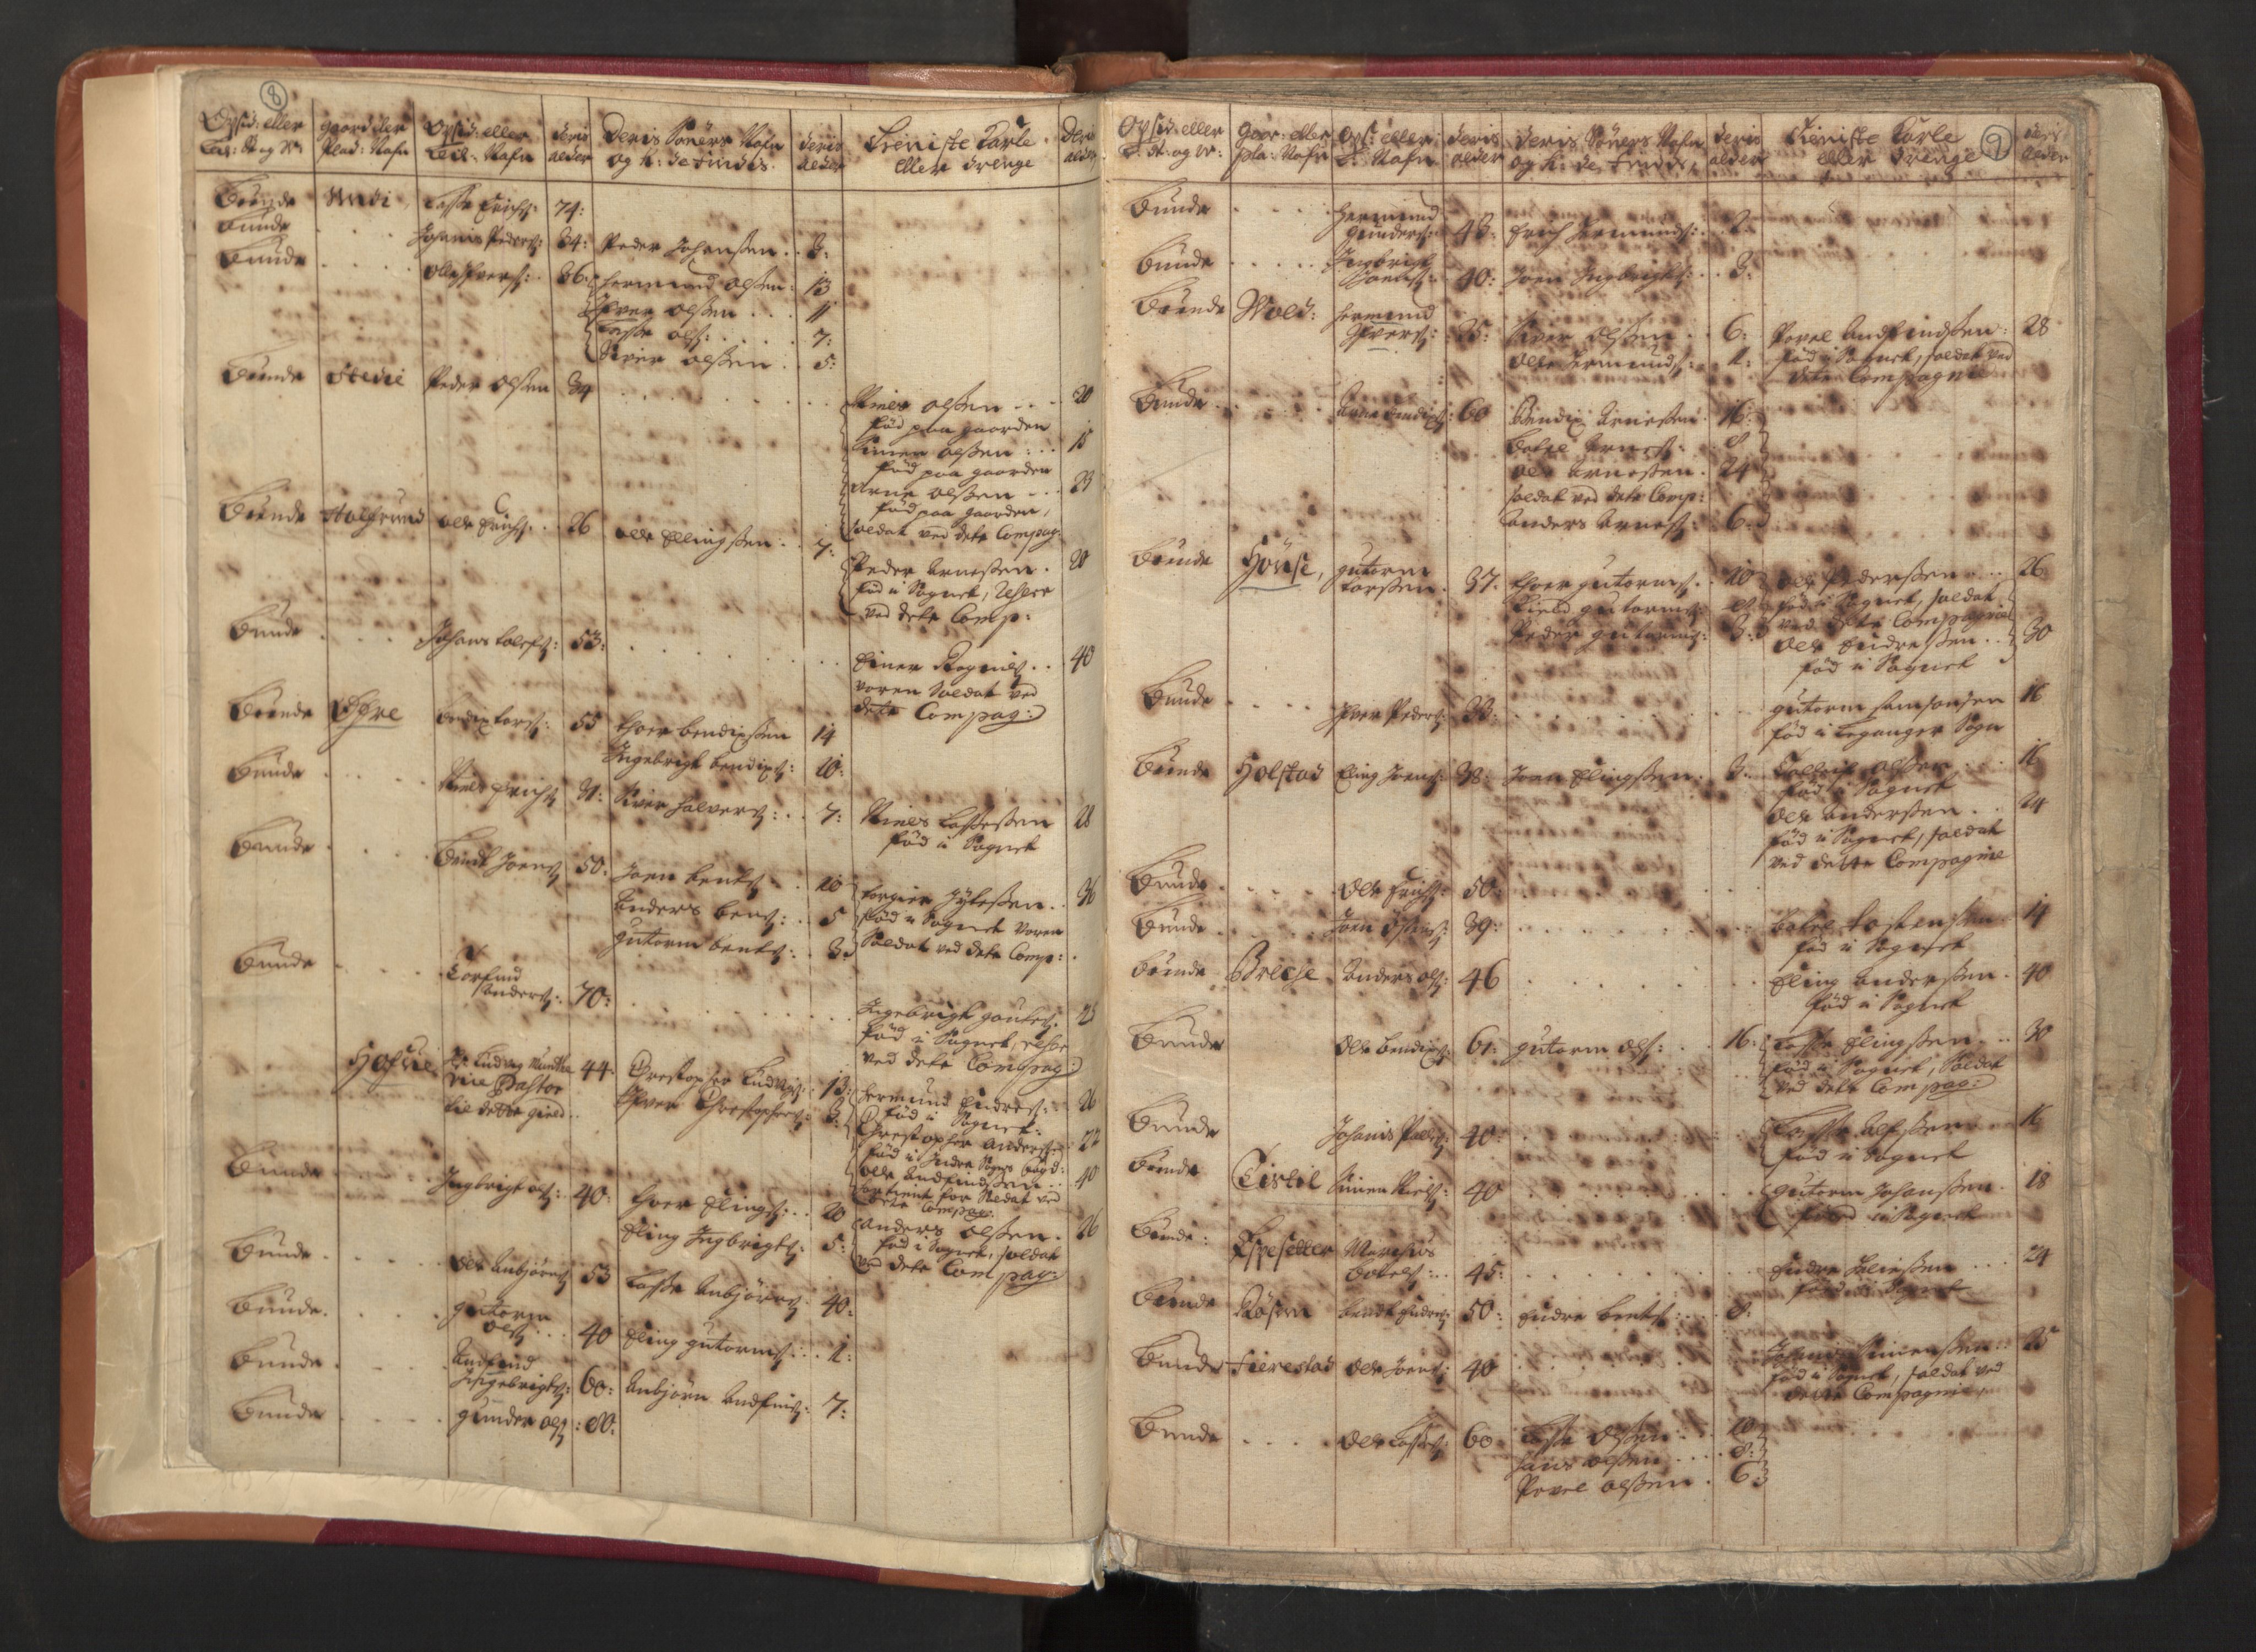 RA, Manntallet 1701, nr. 8: Ytre Sogn fogderi og Indre Sogn fogderi, 1701, s. 8-9